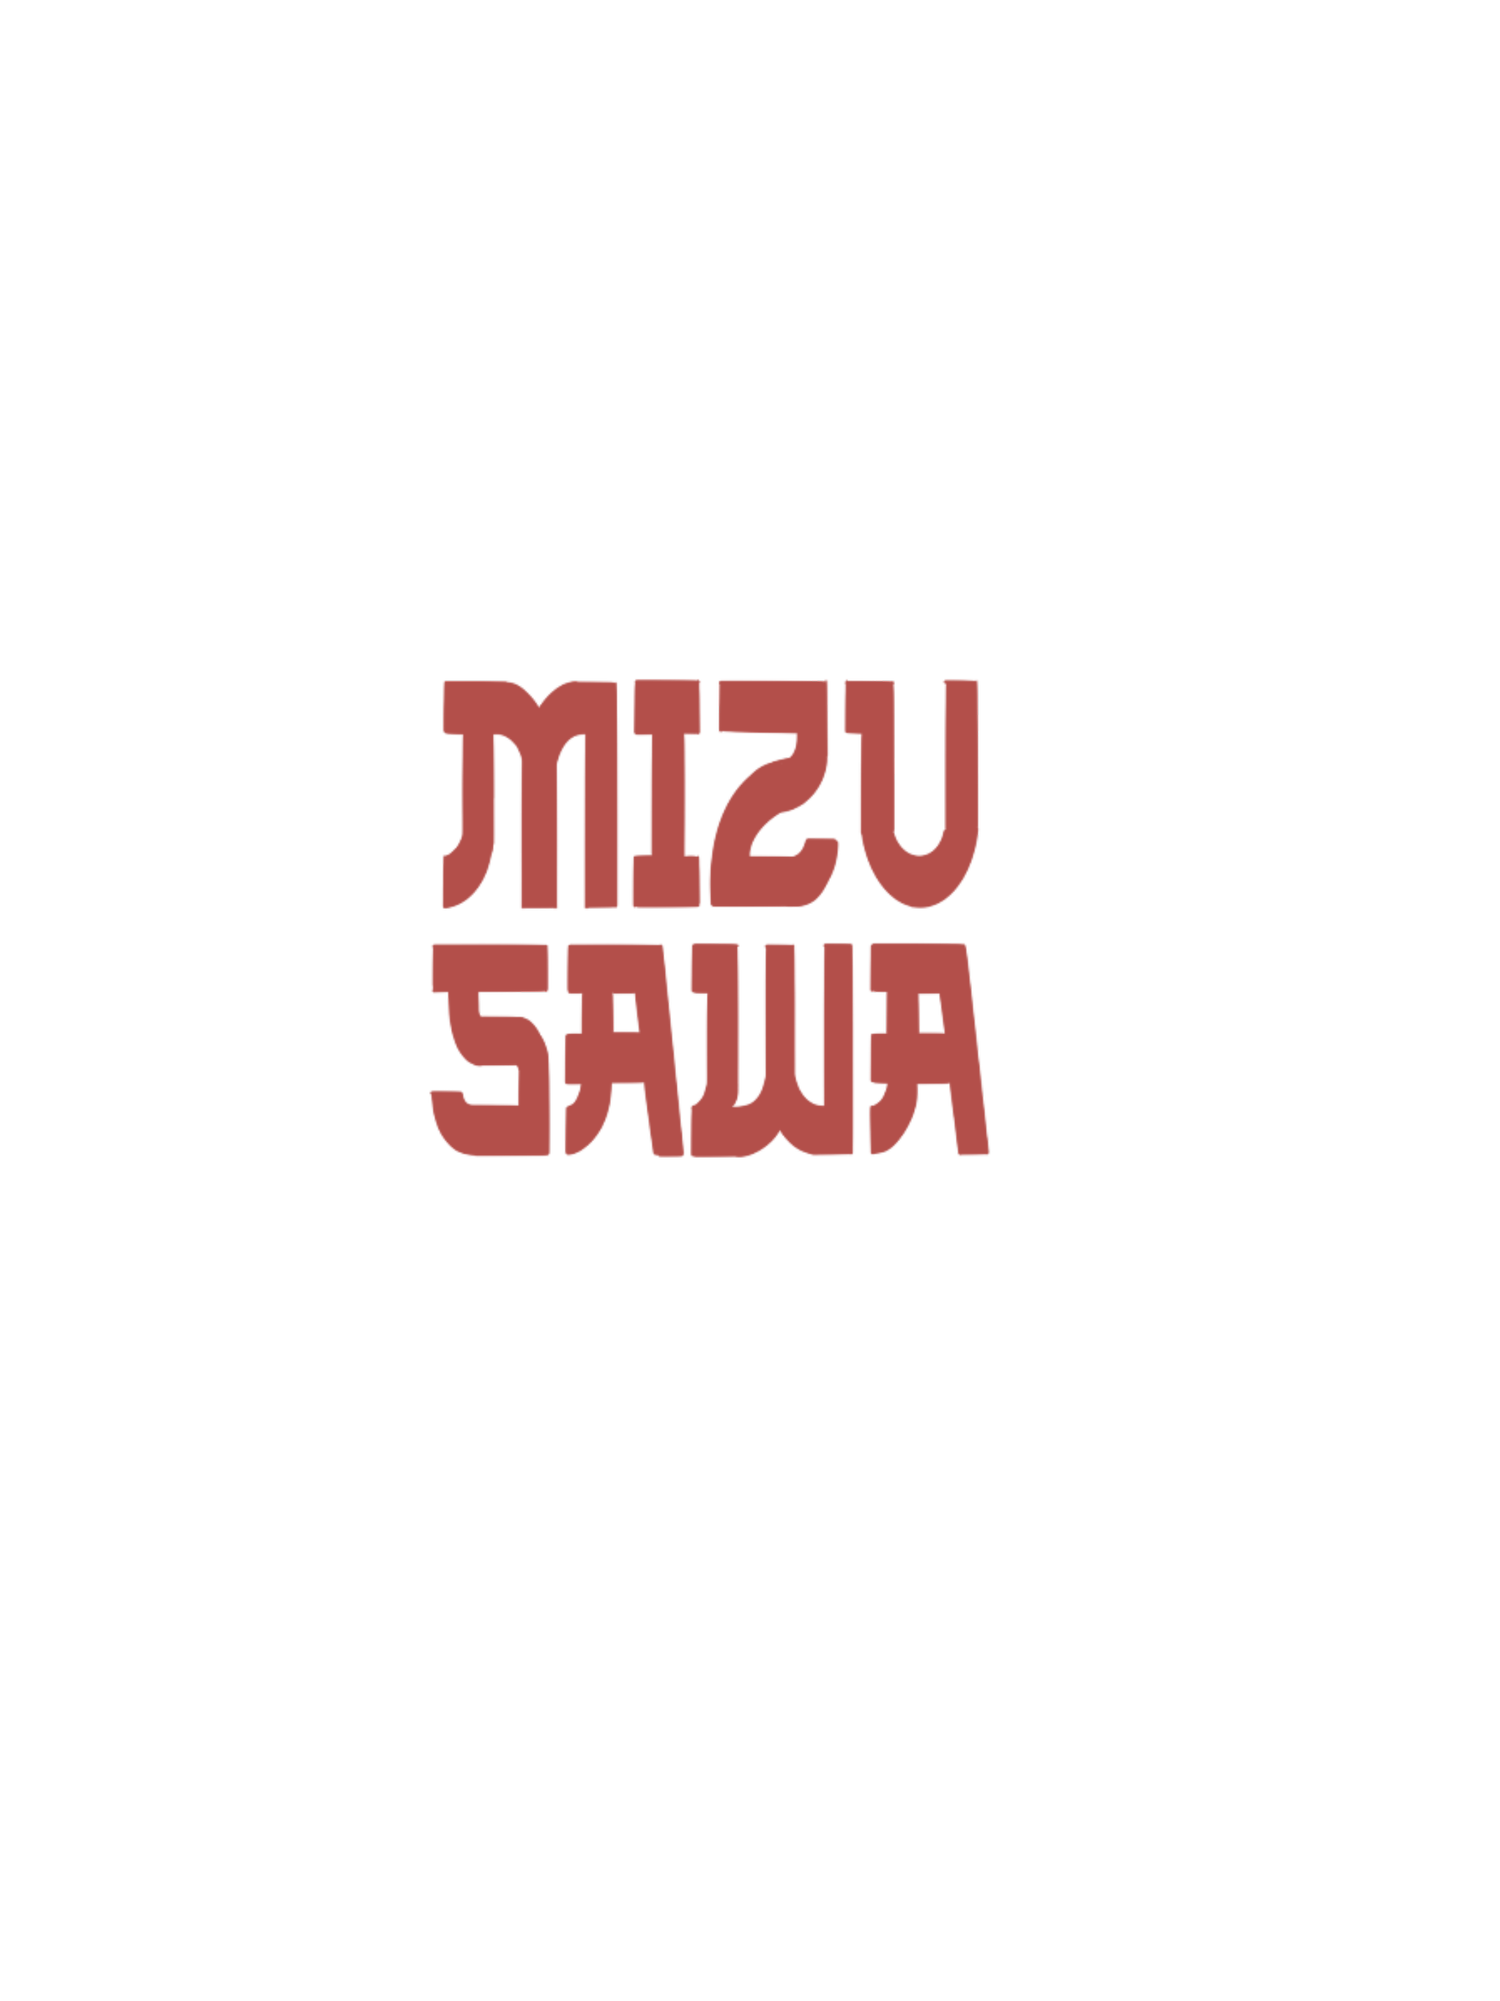 Josh Mizusawa